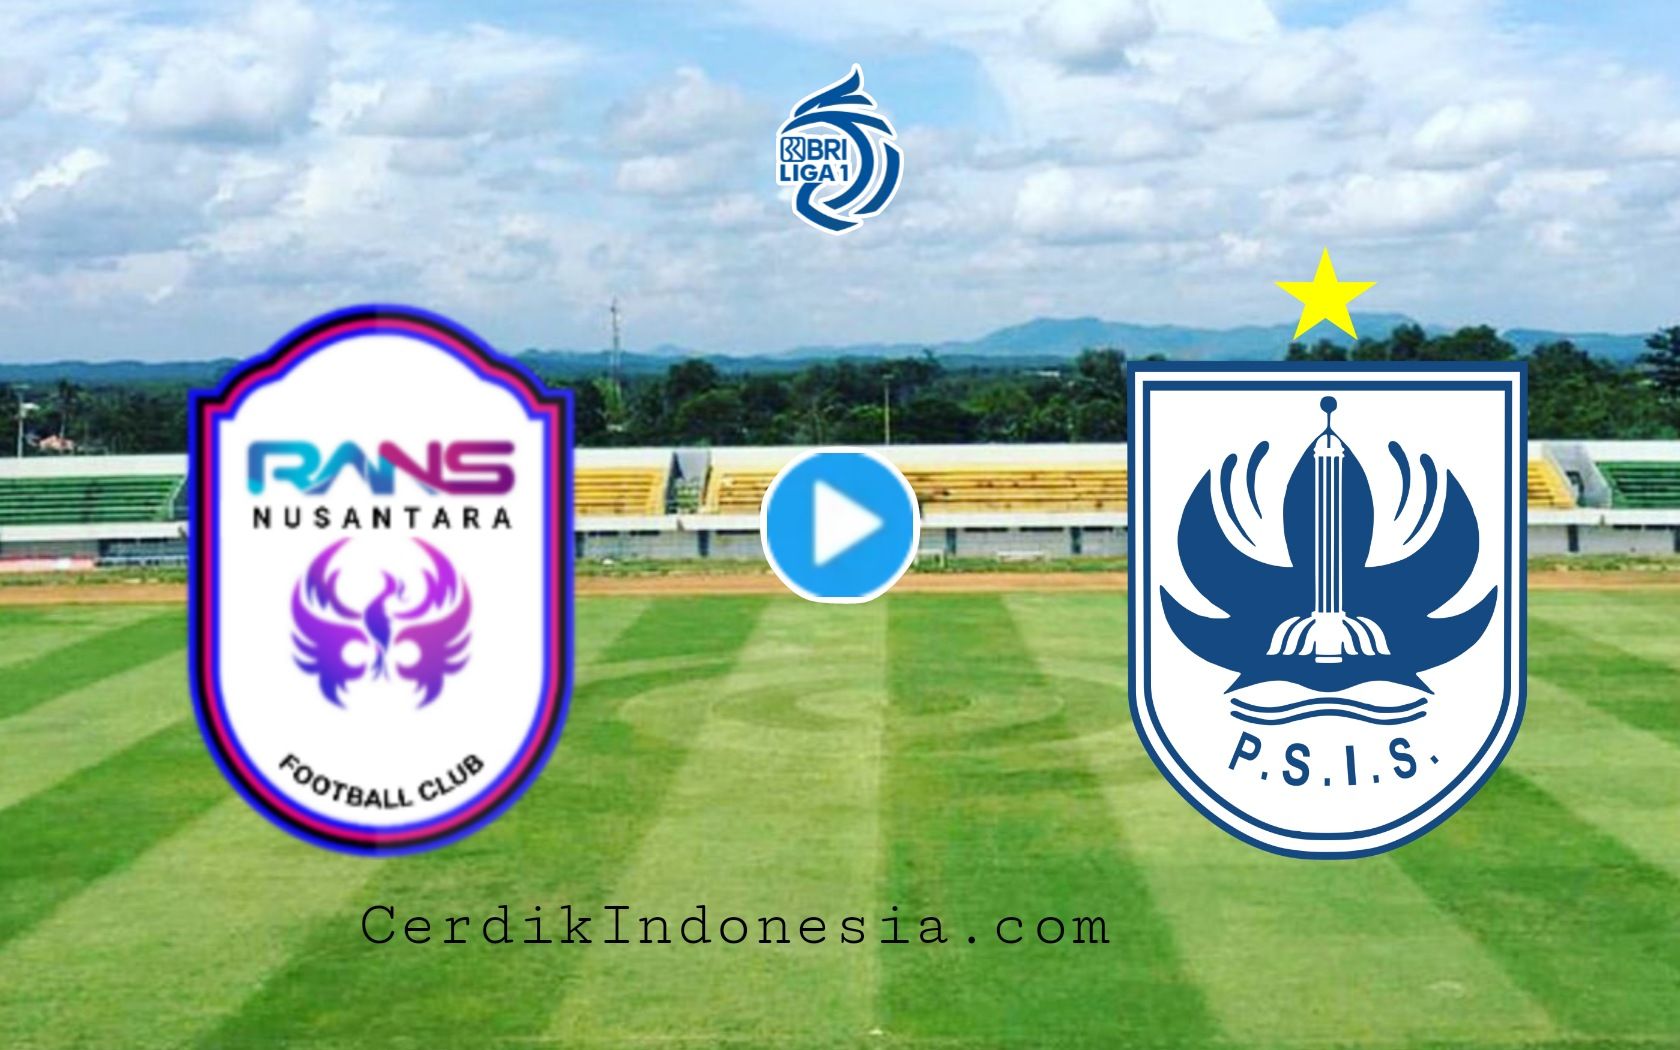 Cek jadwal link live streaming RANS Nusantara FC vs PSIS Semarang nonton BRI Liga 1 Indonesia hari ini Senin 16 Januari 2023 di TV online jam 15.00 WIB.